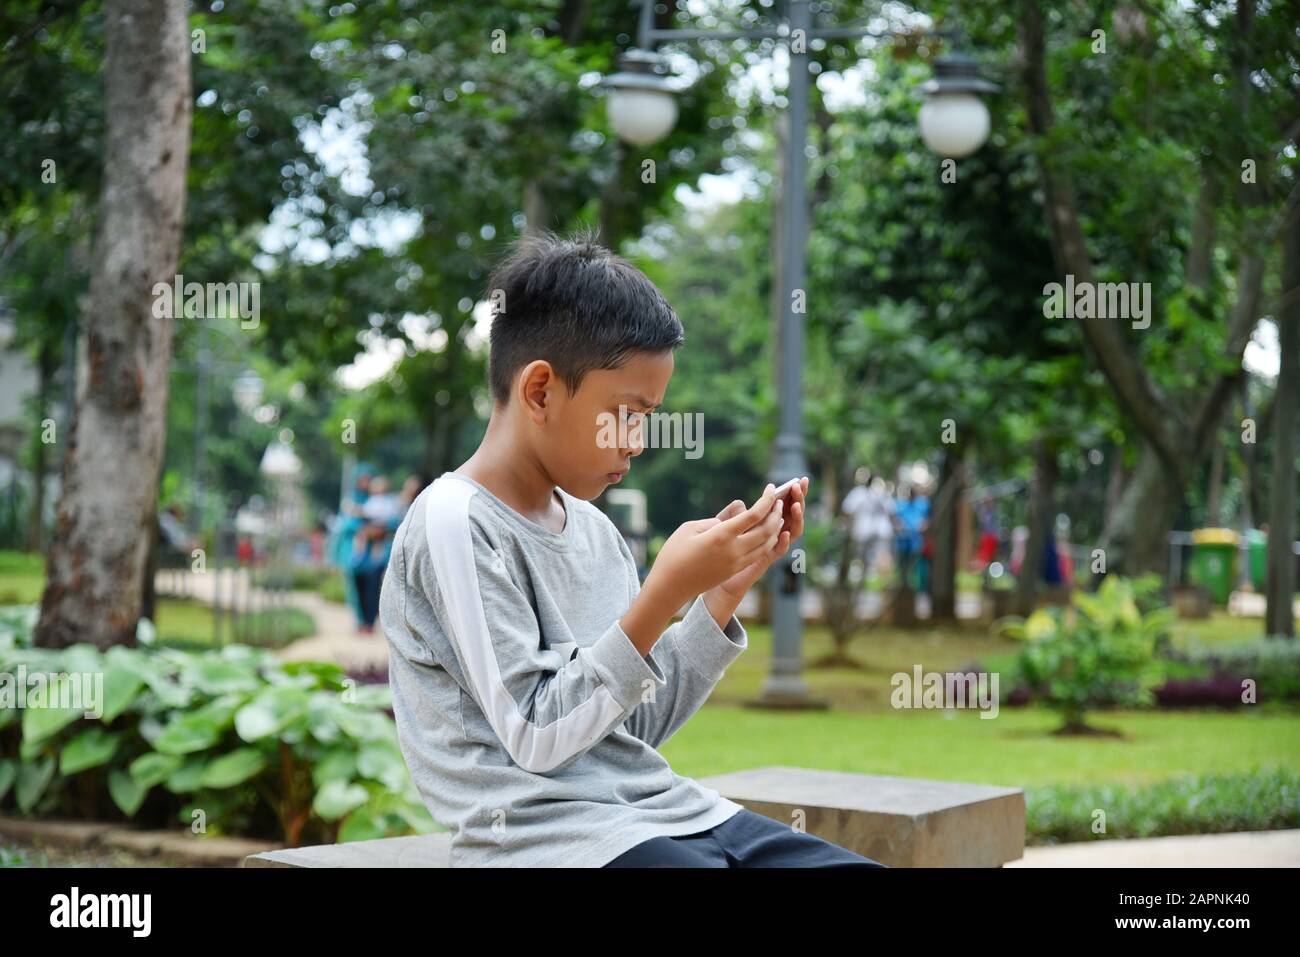 10 Jahre alt, Kid sitzt auf dem Stuhl im Park und spielt Online-Spiel, mit seinem Mobilgerät, Handtelefon Stockfoto